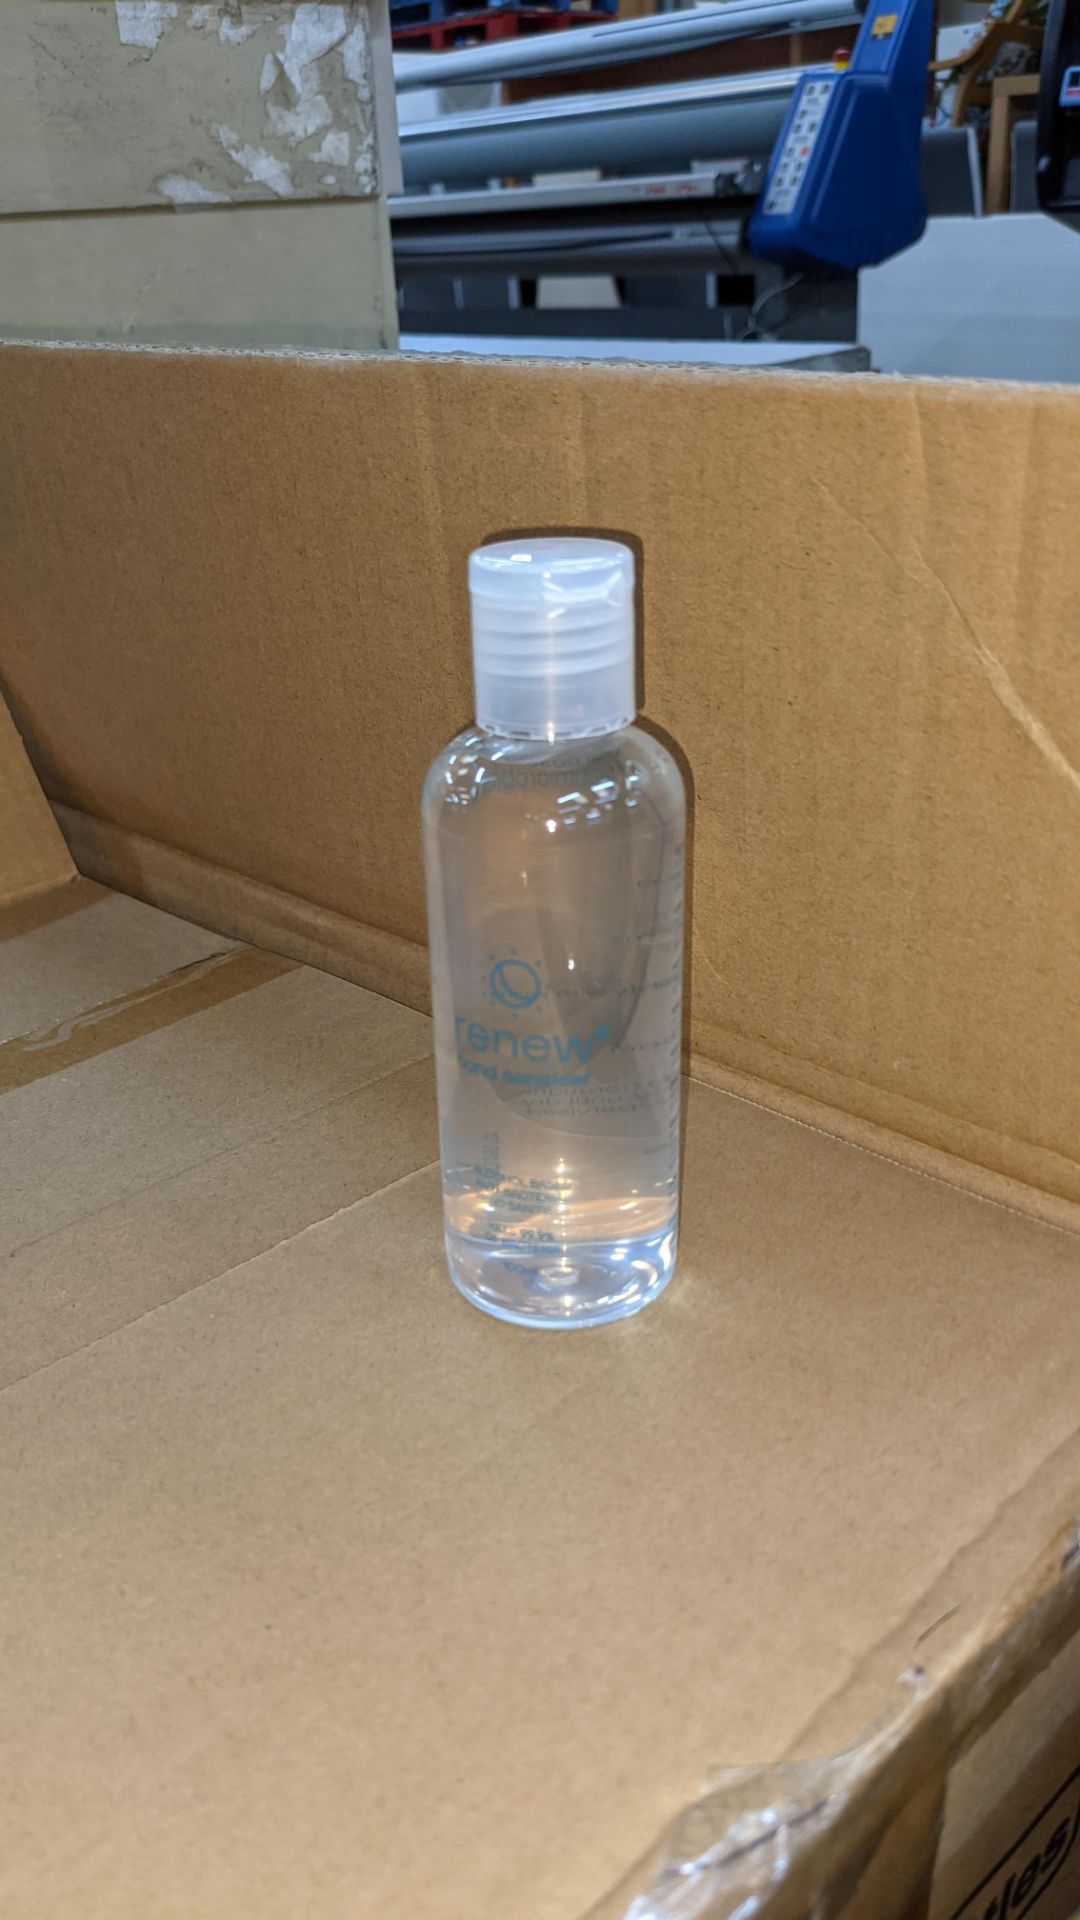 572 off 100ml bottles of hand sanitiser each containing Aloe Vera antibacterial moisturiser. 75% et - Image 3 of 7